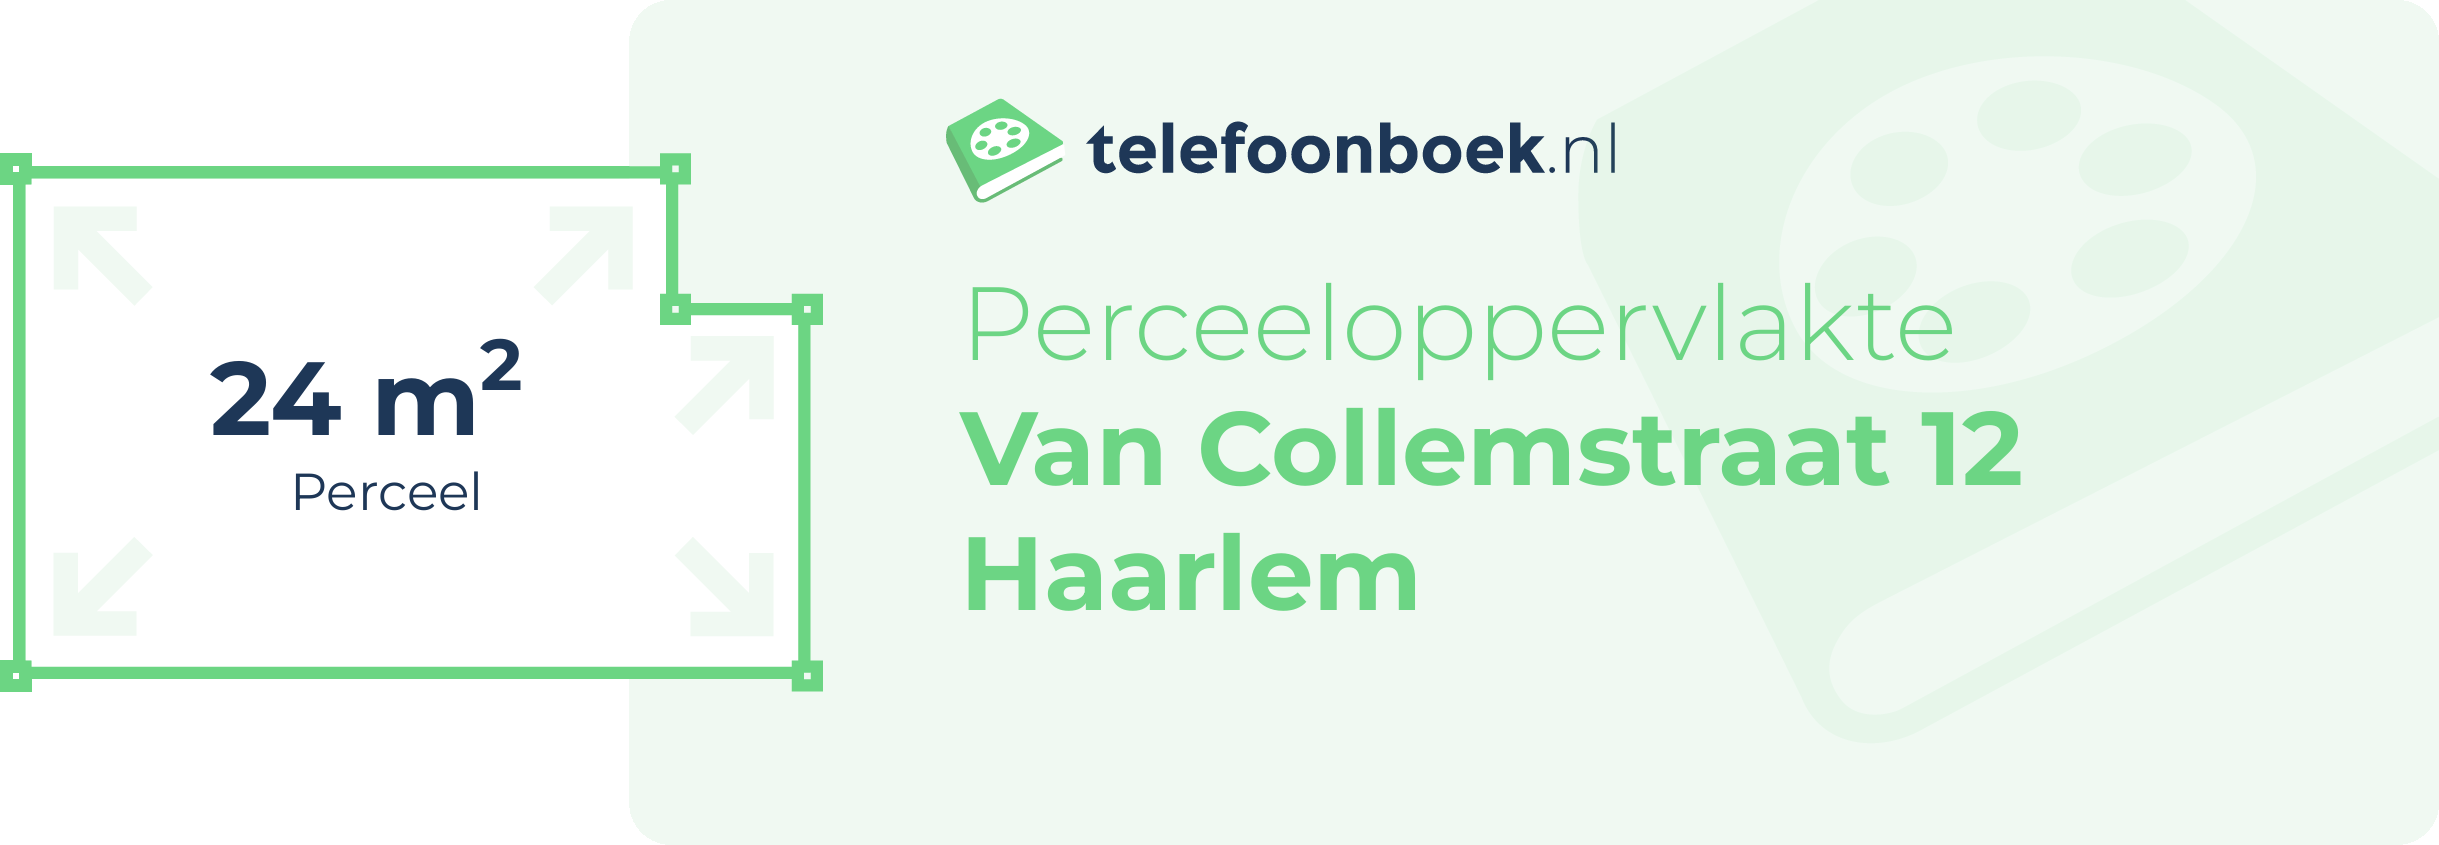 Perceeloppervlakte Van Collemstraat 12 Haarlem